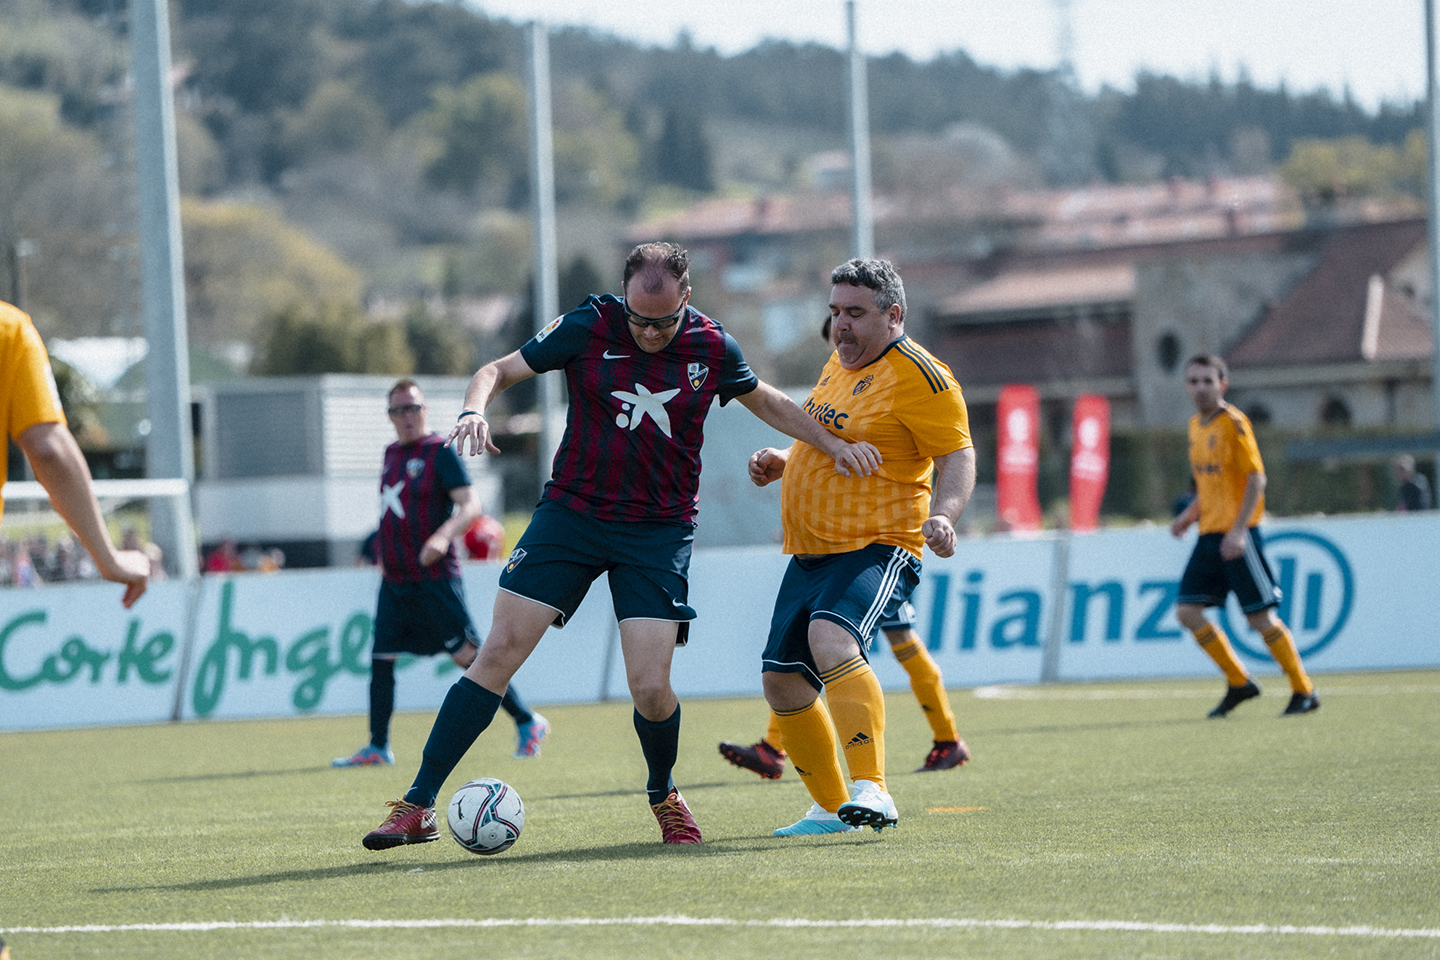 Un jugador de la SD Huesca Genuine protege el balón frente a otro de la SD Ponferradina Genuine en uno de los partidos disputados en la Ciudad Deportiva de Lezama en LaLiga Genuine Santander.